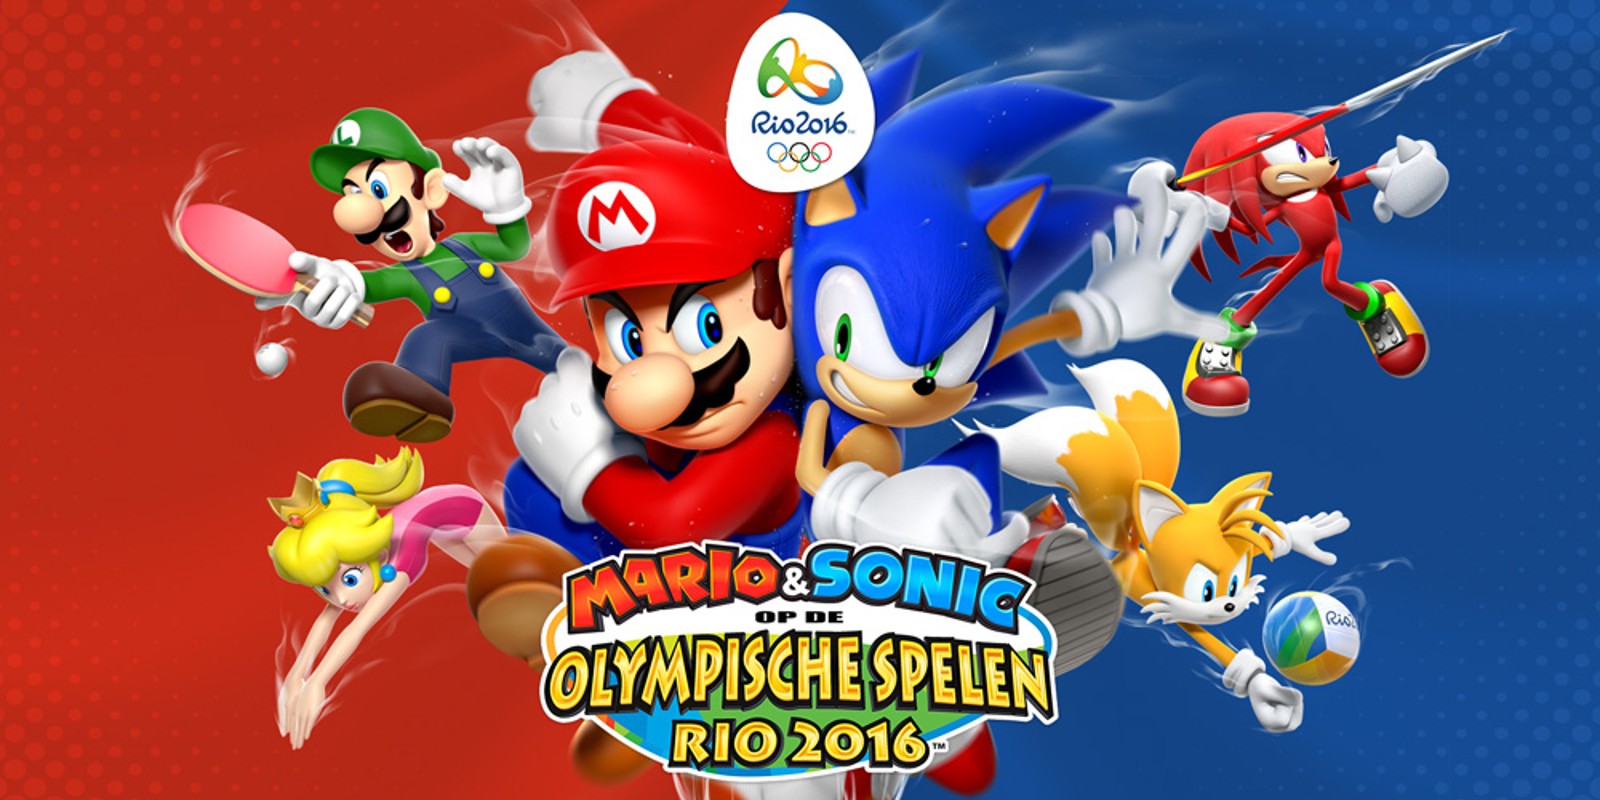 Mario & Sonic op de Olympische Spelen Rio 2016™